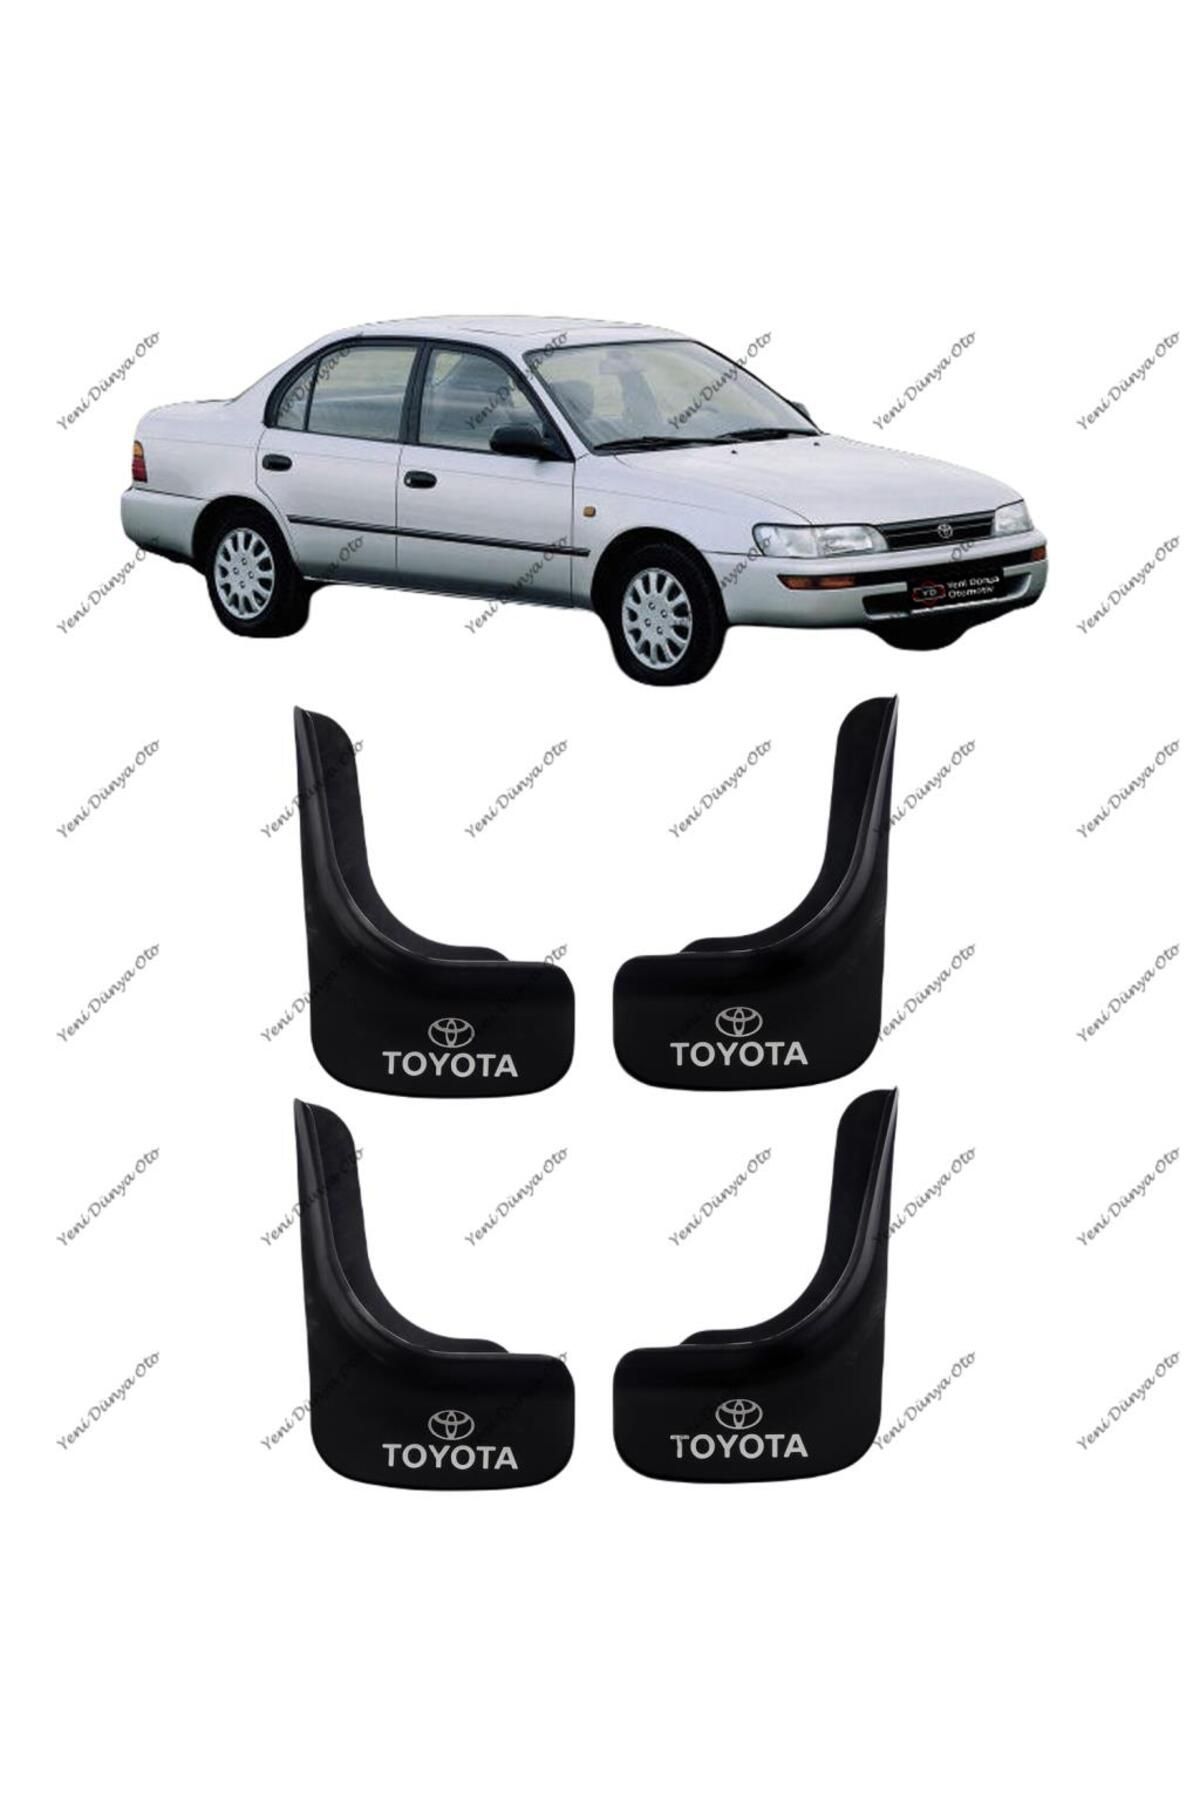 YeniDünyaOto Toyota Corolla 1993-1998 4'lü Ön Arka Paçalık Çamurluk Tozluk Tyt1ux020